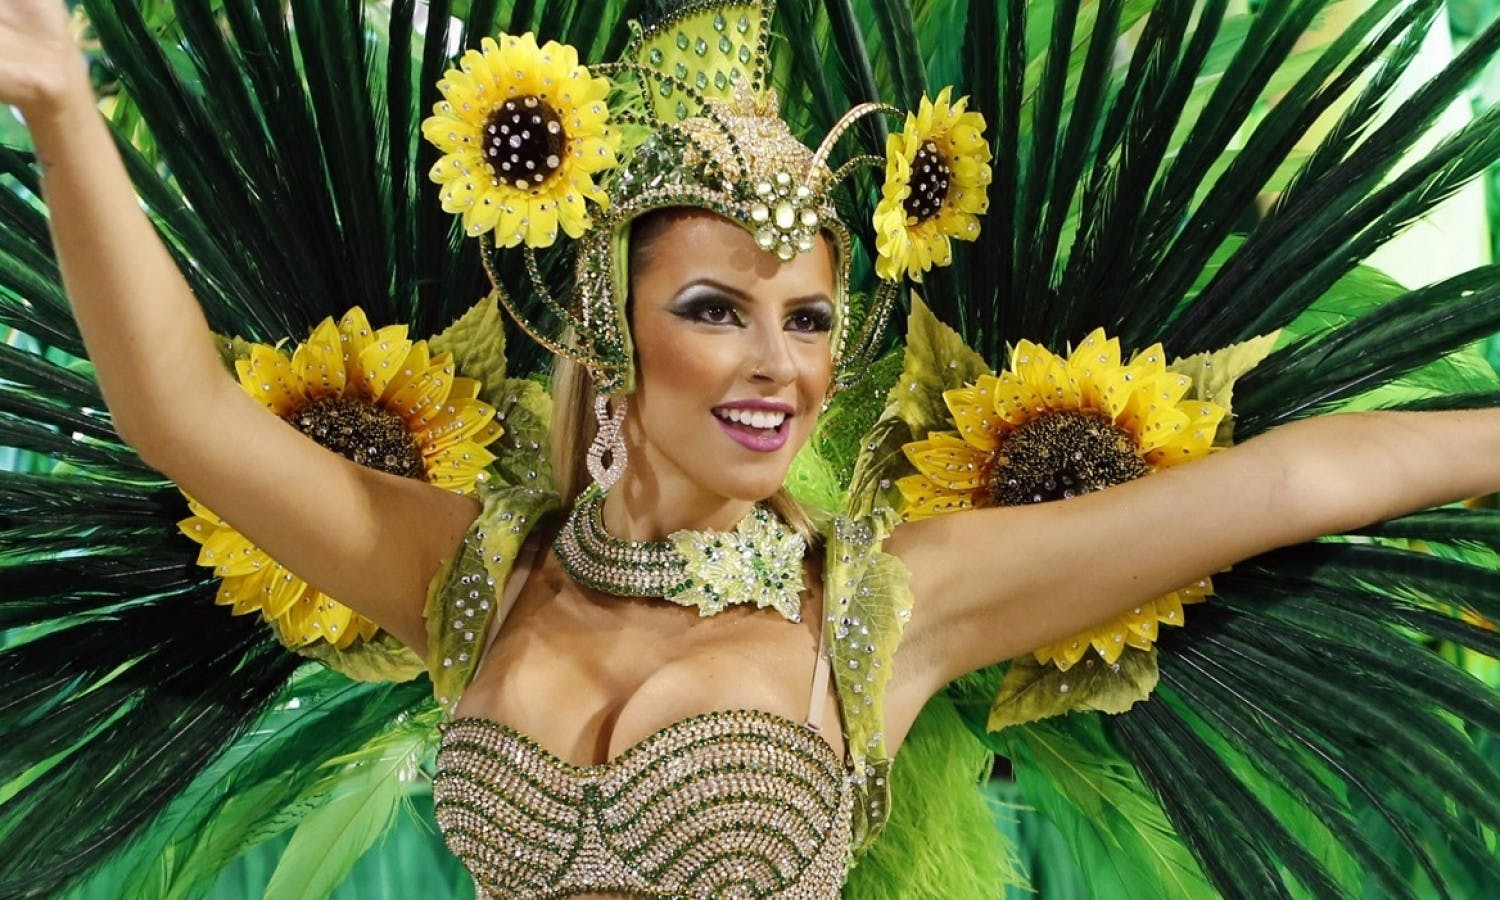 Carnaval brésilien